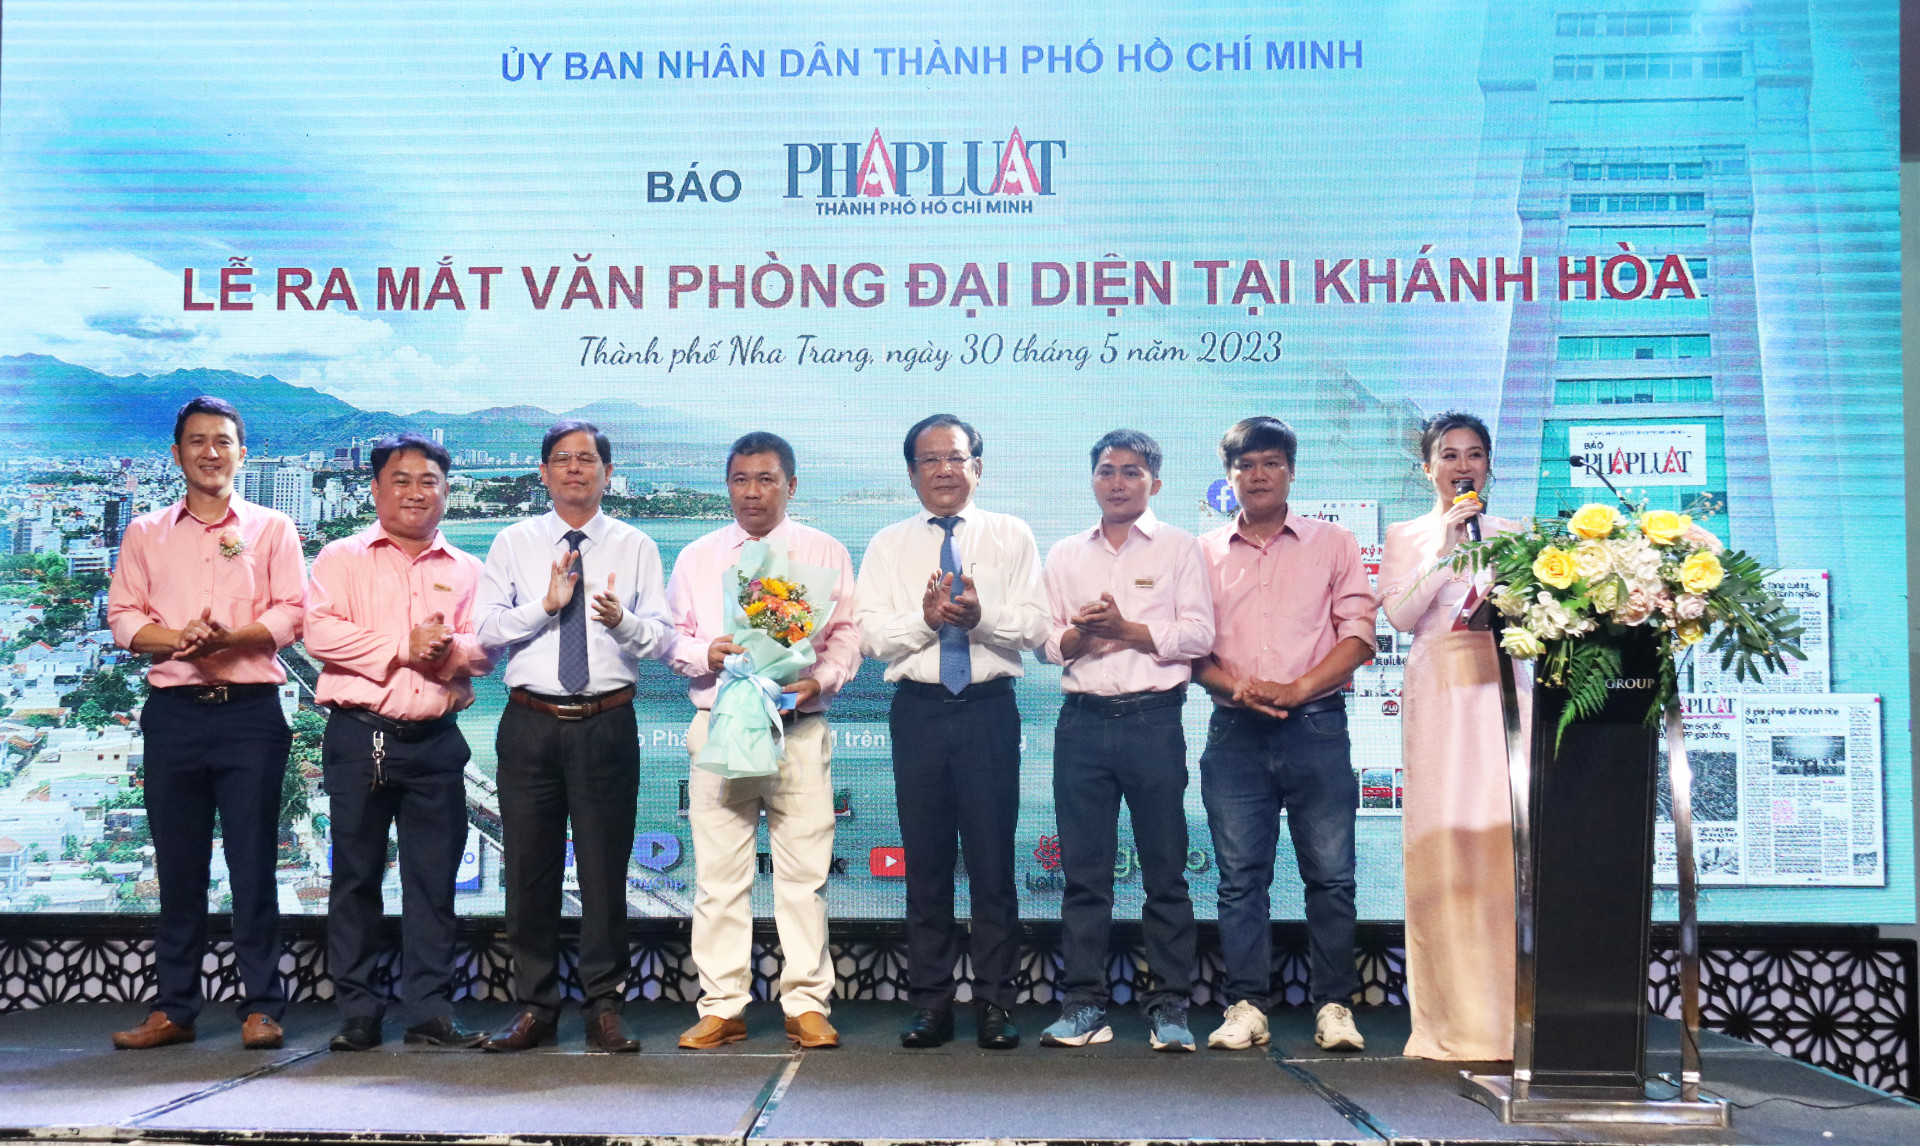 Đồng chí Nguyễn Tấn Tuân (thứ 3 từ trái sang) tặng hoa, chúc mừng Văn phòng đại diện báo Pháp Luật TP. Hồ Chí Minh tại Khánh Hòa